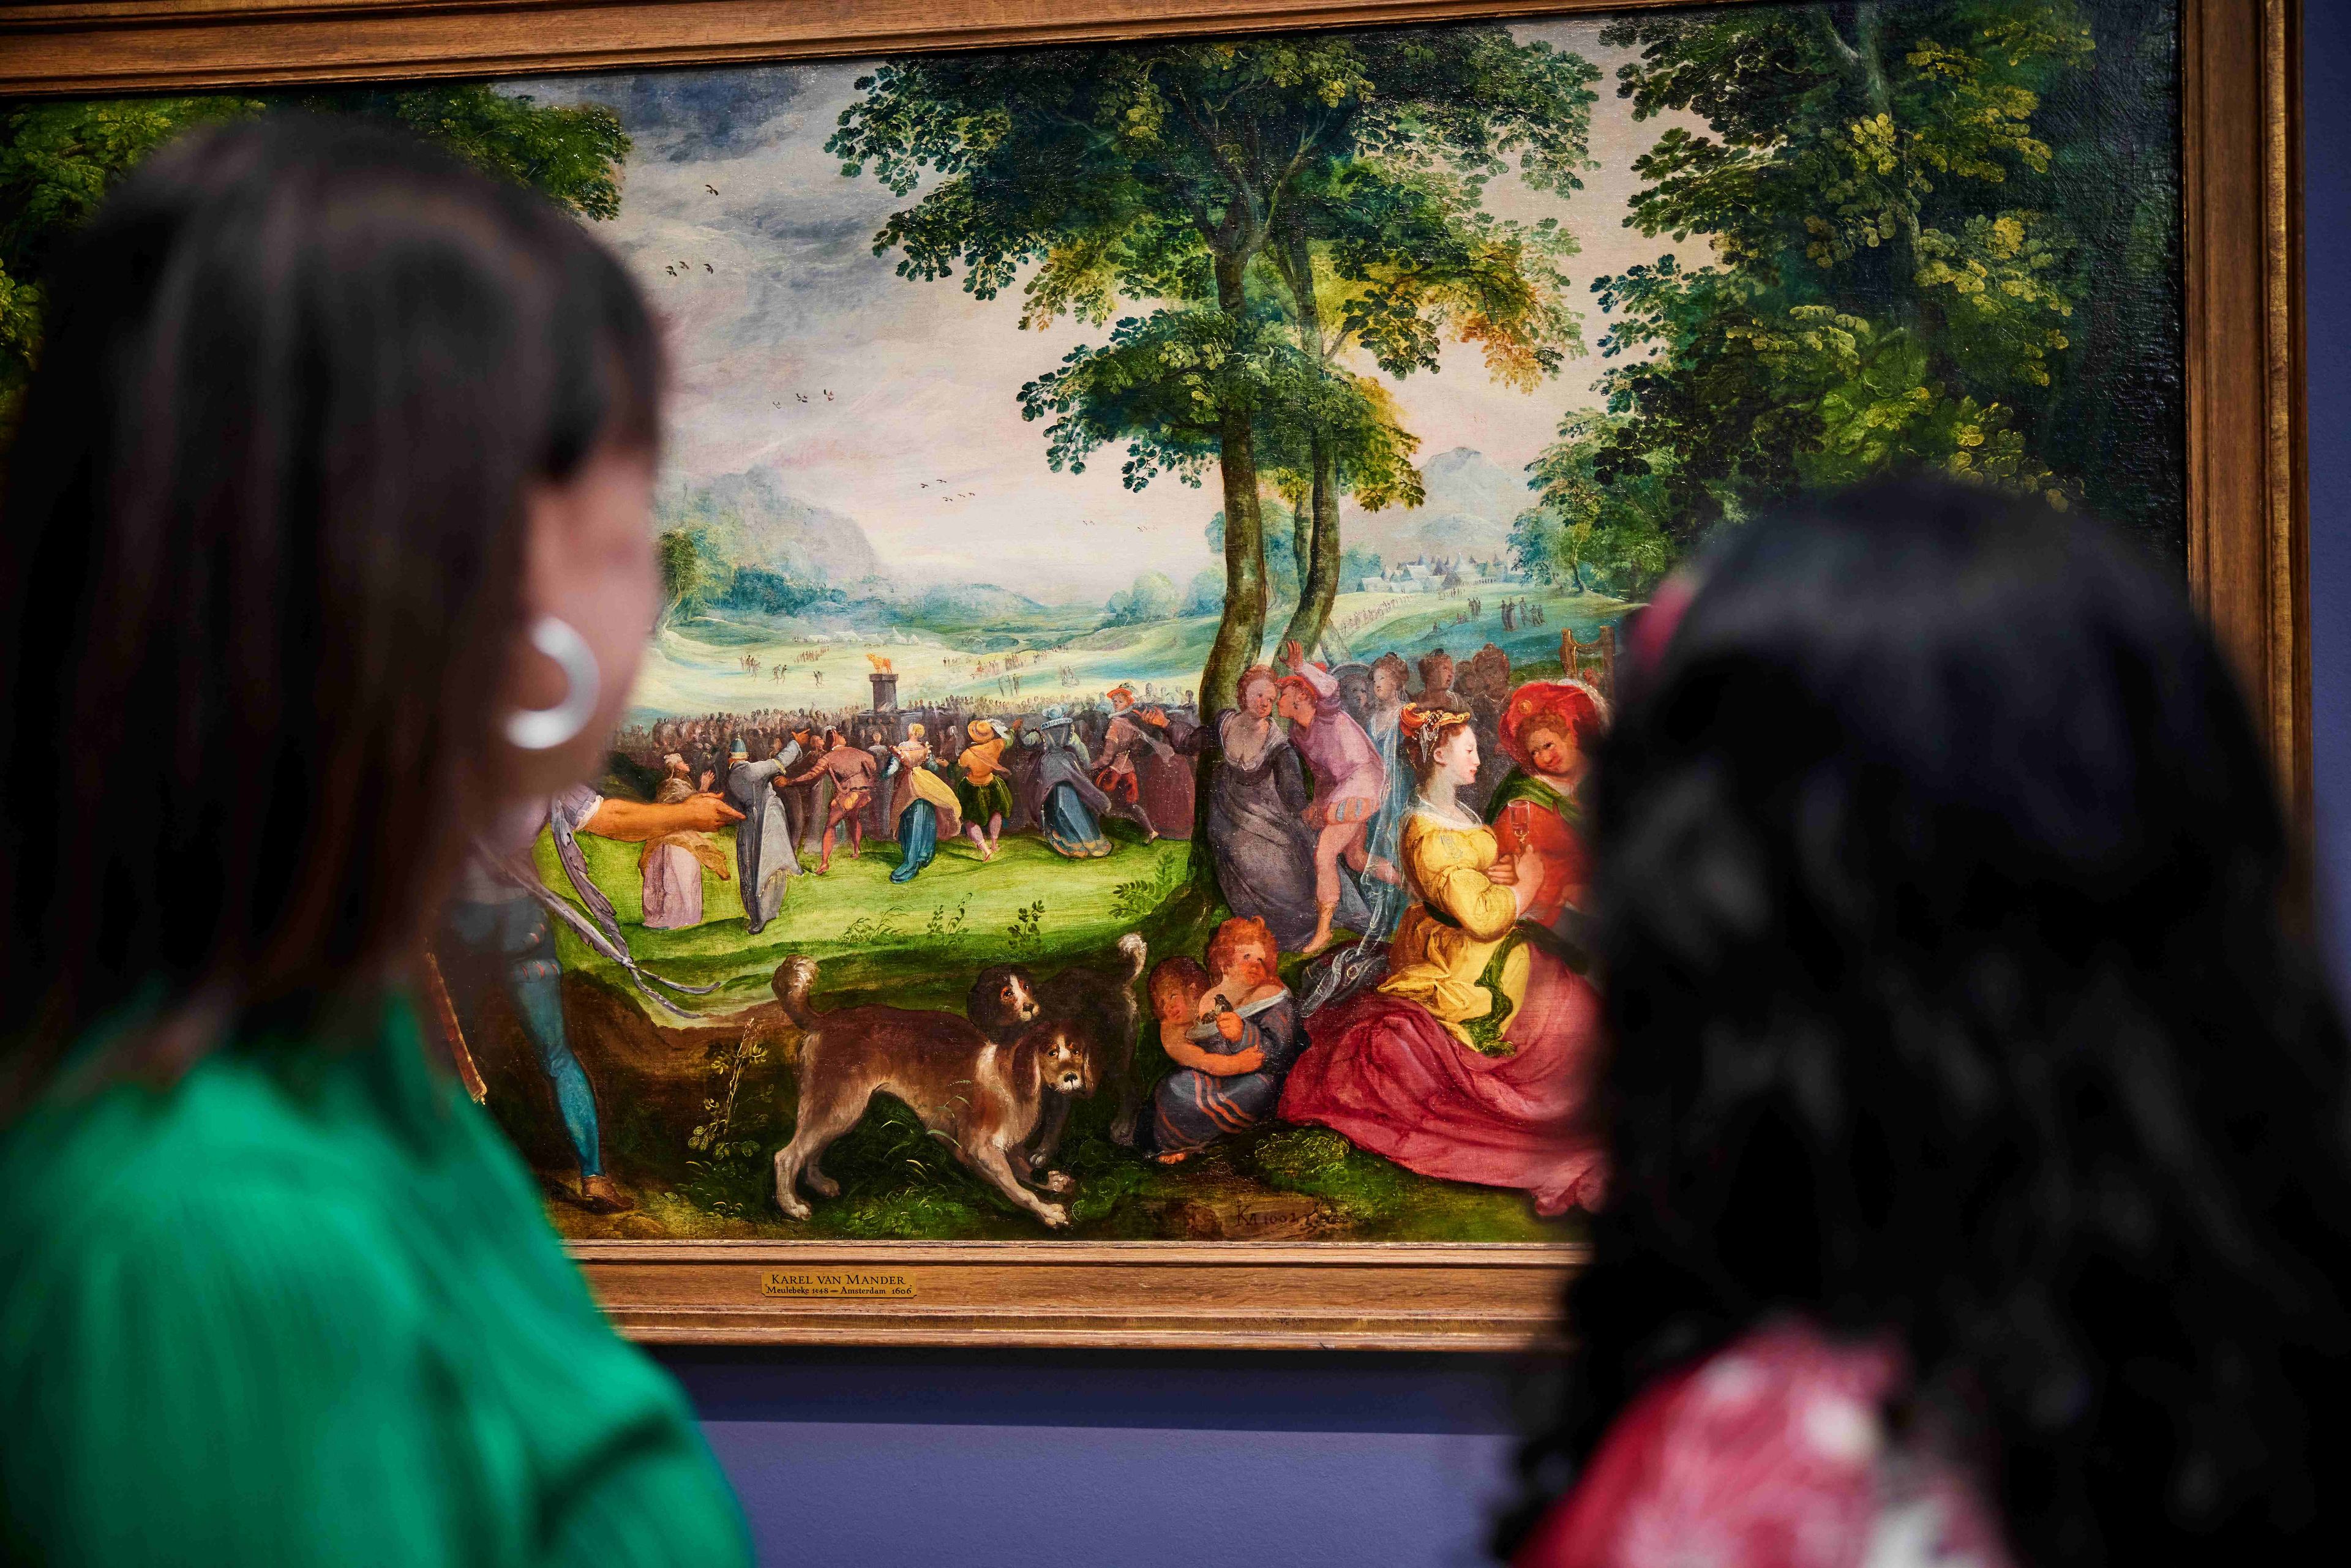 Twee vrouwelijke bezoekers kijken naar een schilderij in het Frans Hals Museum.